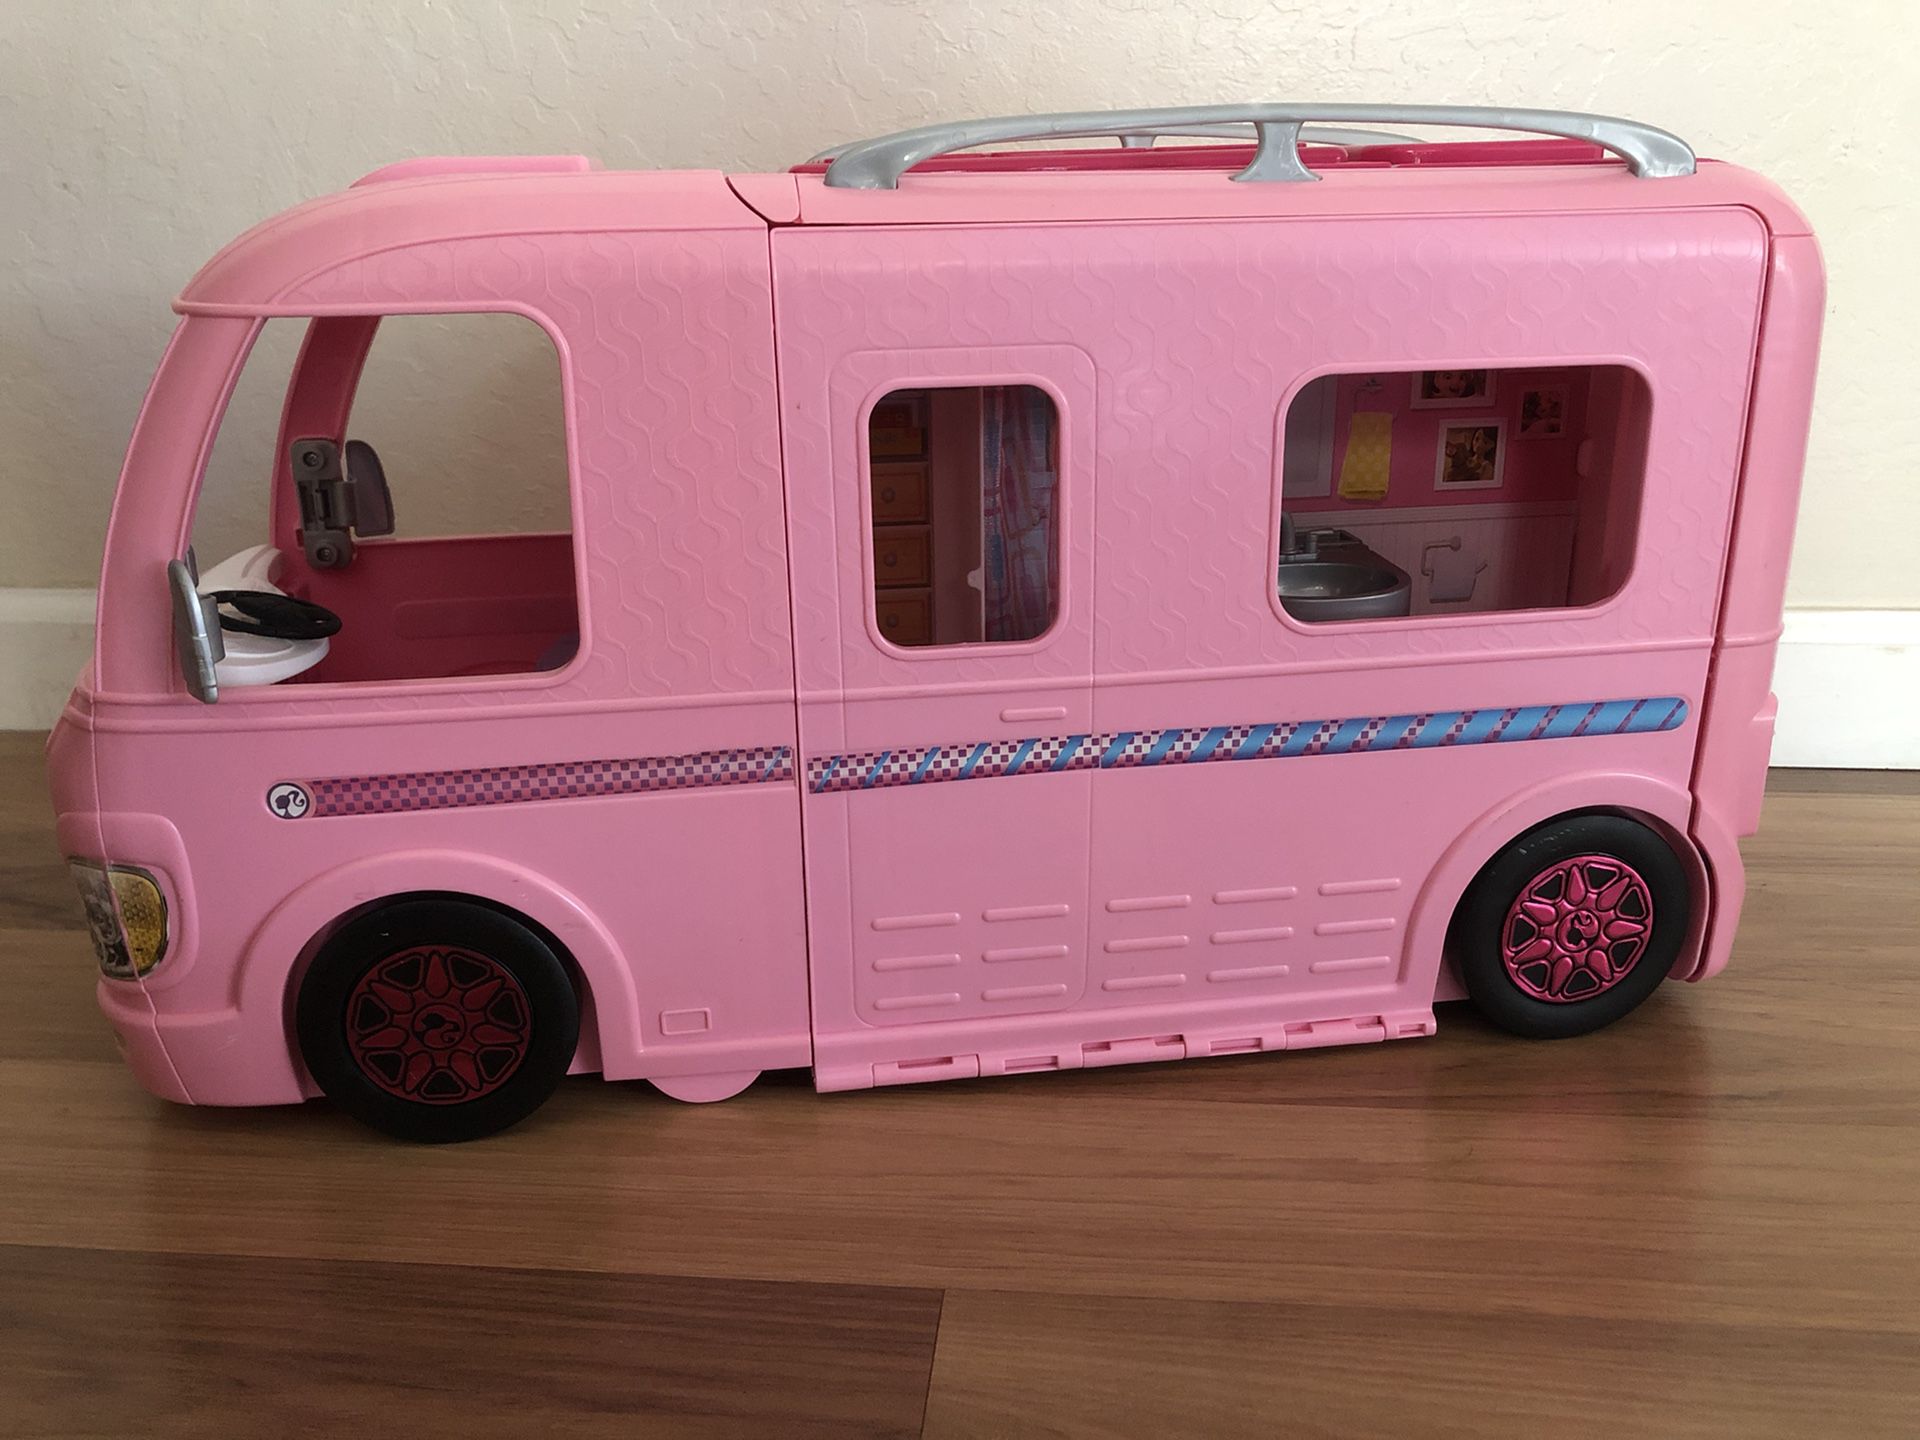 Mattel Barbie Dream Camper RV Pink 2016 Motorhome Van